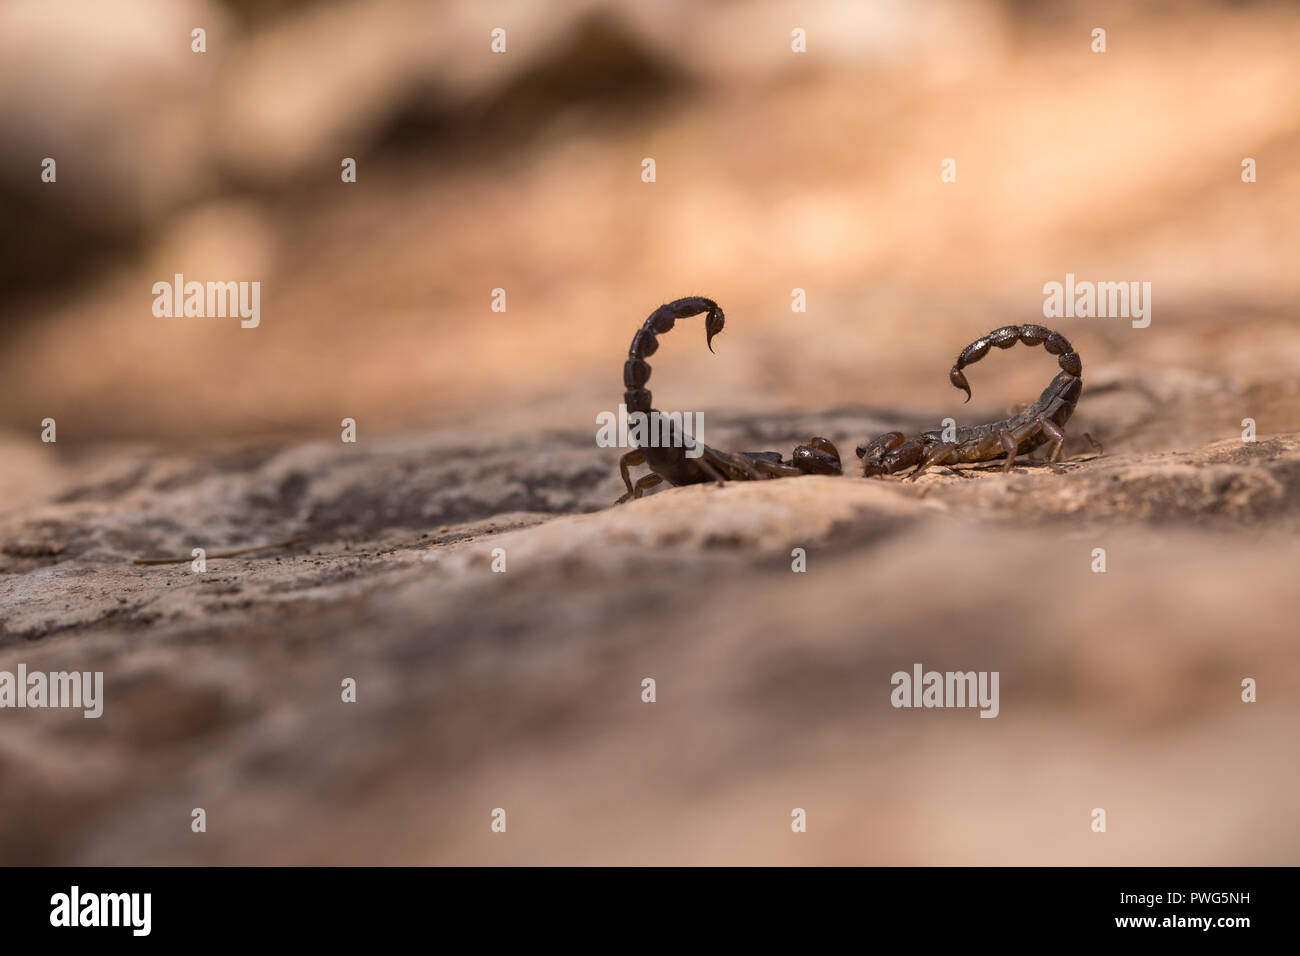 Scorpion noir israélien (Scorpio maurus fuscus) AKA Scorpion d'or israélien sur une dune de sable photographiés en Israël en août de l'été Banque D'Images